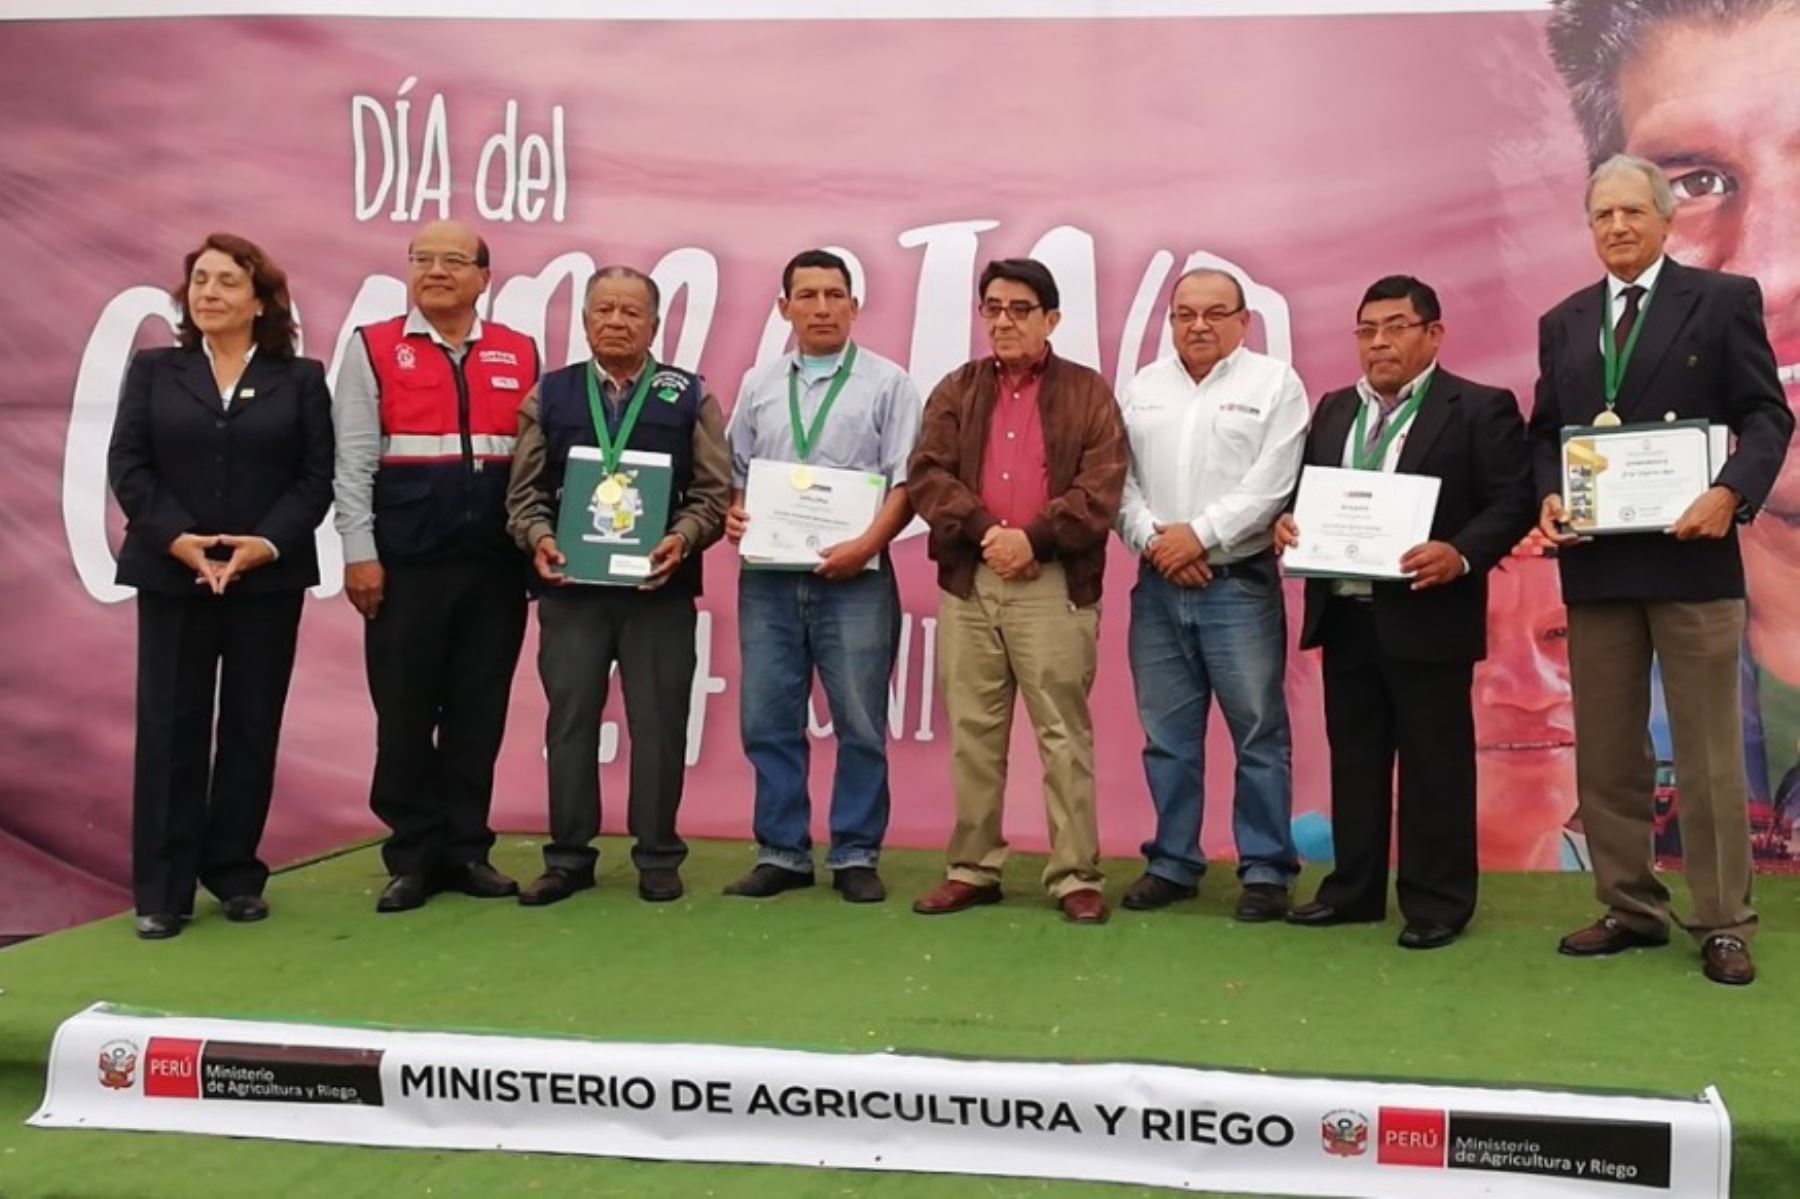 En el marco del Día del Campesino, el Ministerio de Agricultura y Riego (Minagri), reconoció con la medalla “Ministerio de Agricultura y Riego” a cuatro productores de la región Ica por su buen desempeño agrícola, pecuario, agroindustrial y forestal, respectivamente.